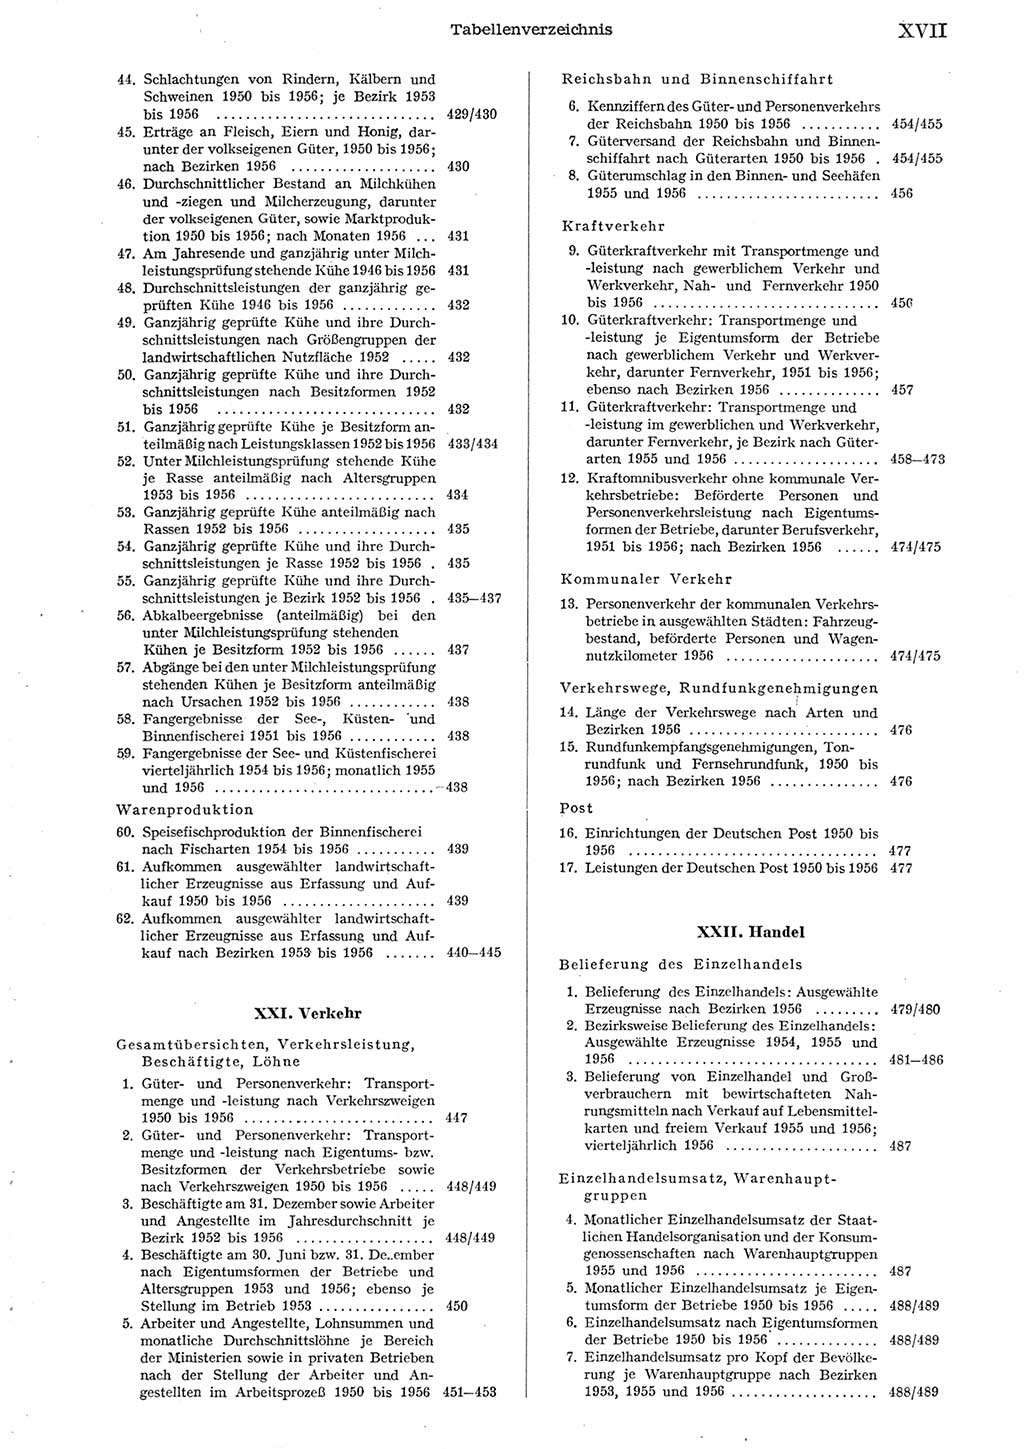 Statistisches Jahrbuch der Deutschen Demokratischen Republik (DDR) 1956, Seite 17 (Stat. Jb. DDR 1956, S. 17)